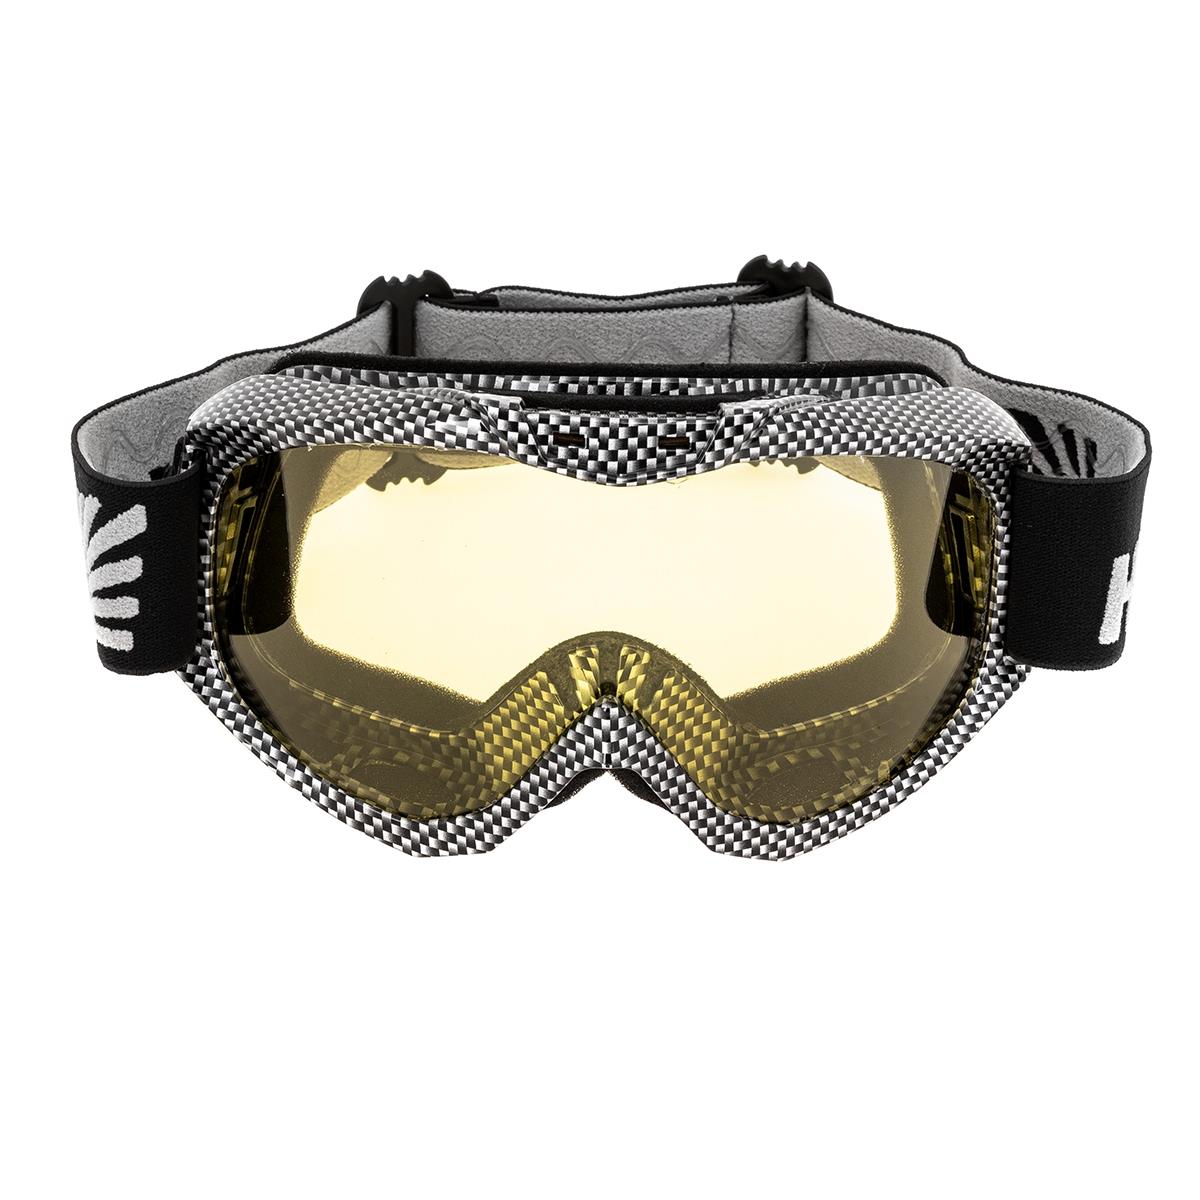 Очки горнолыжные HS-MT-001-Y Helios очки маска для езды на мототехнике разборные визор оранжевый